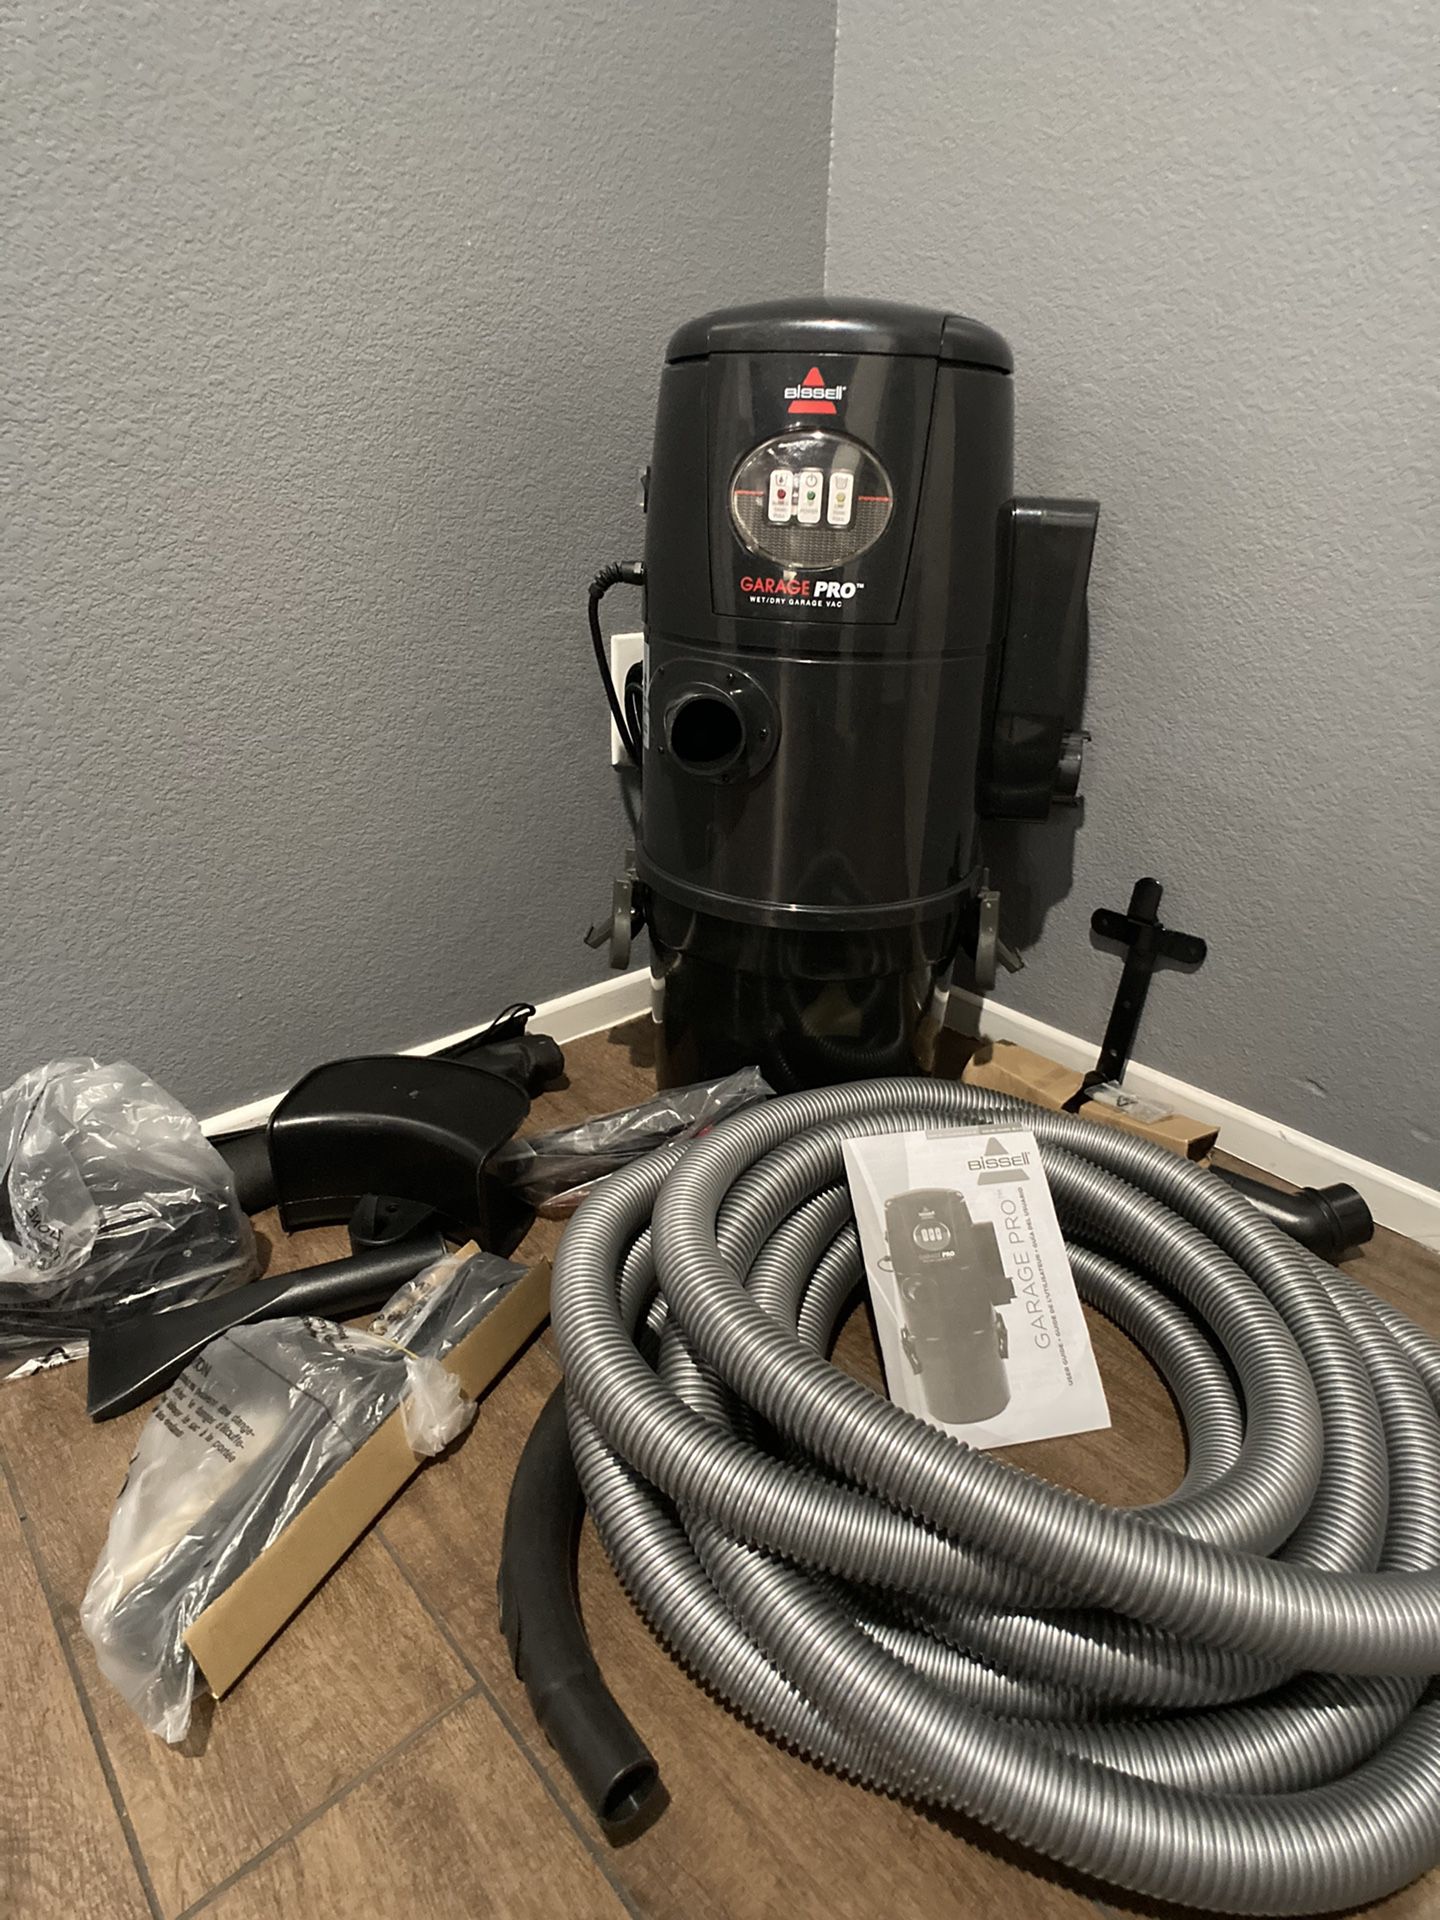 Bissell garage pro vacuum